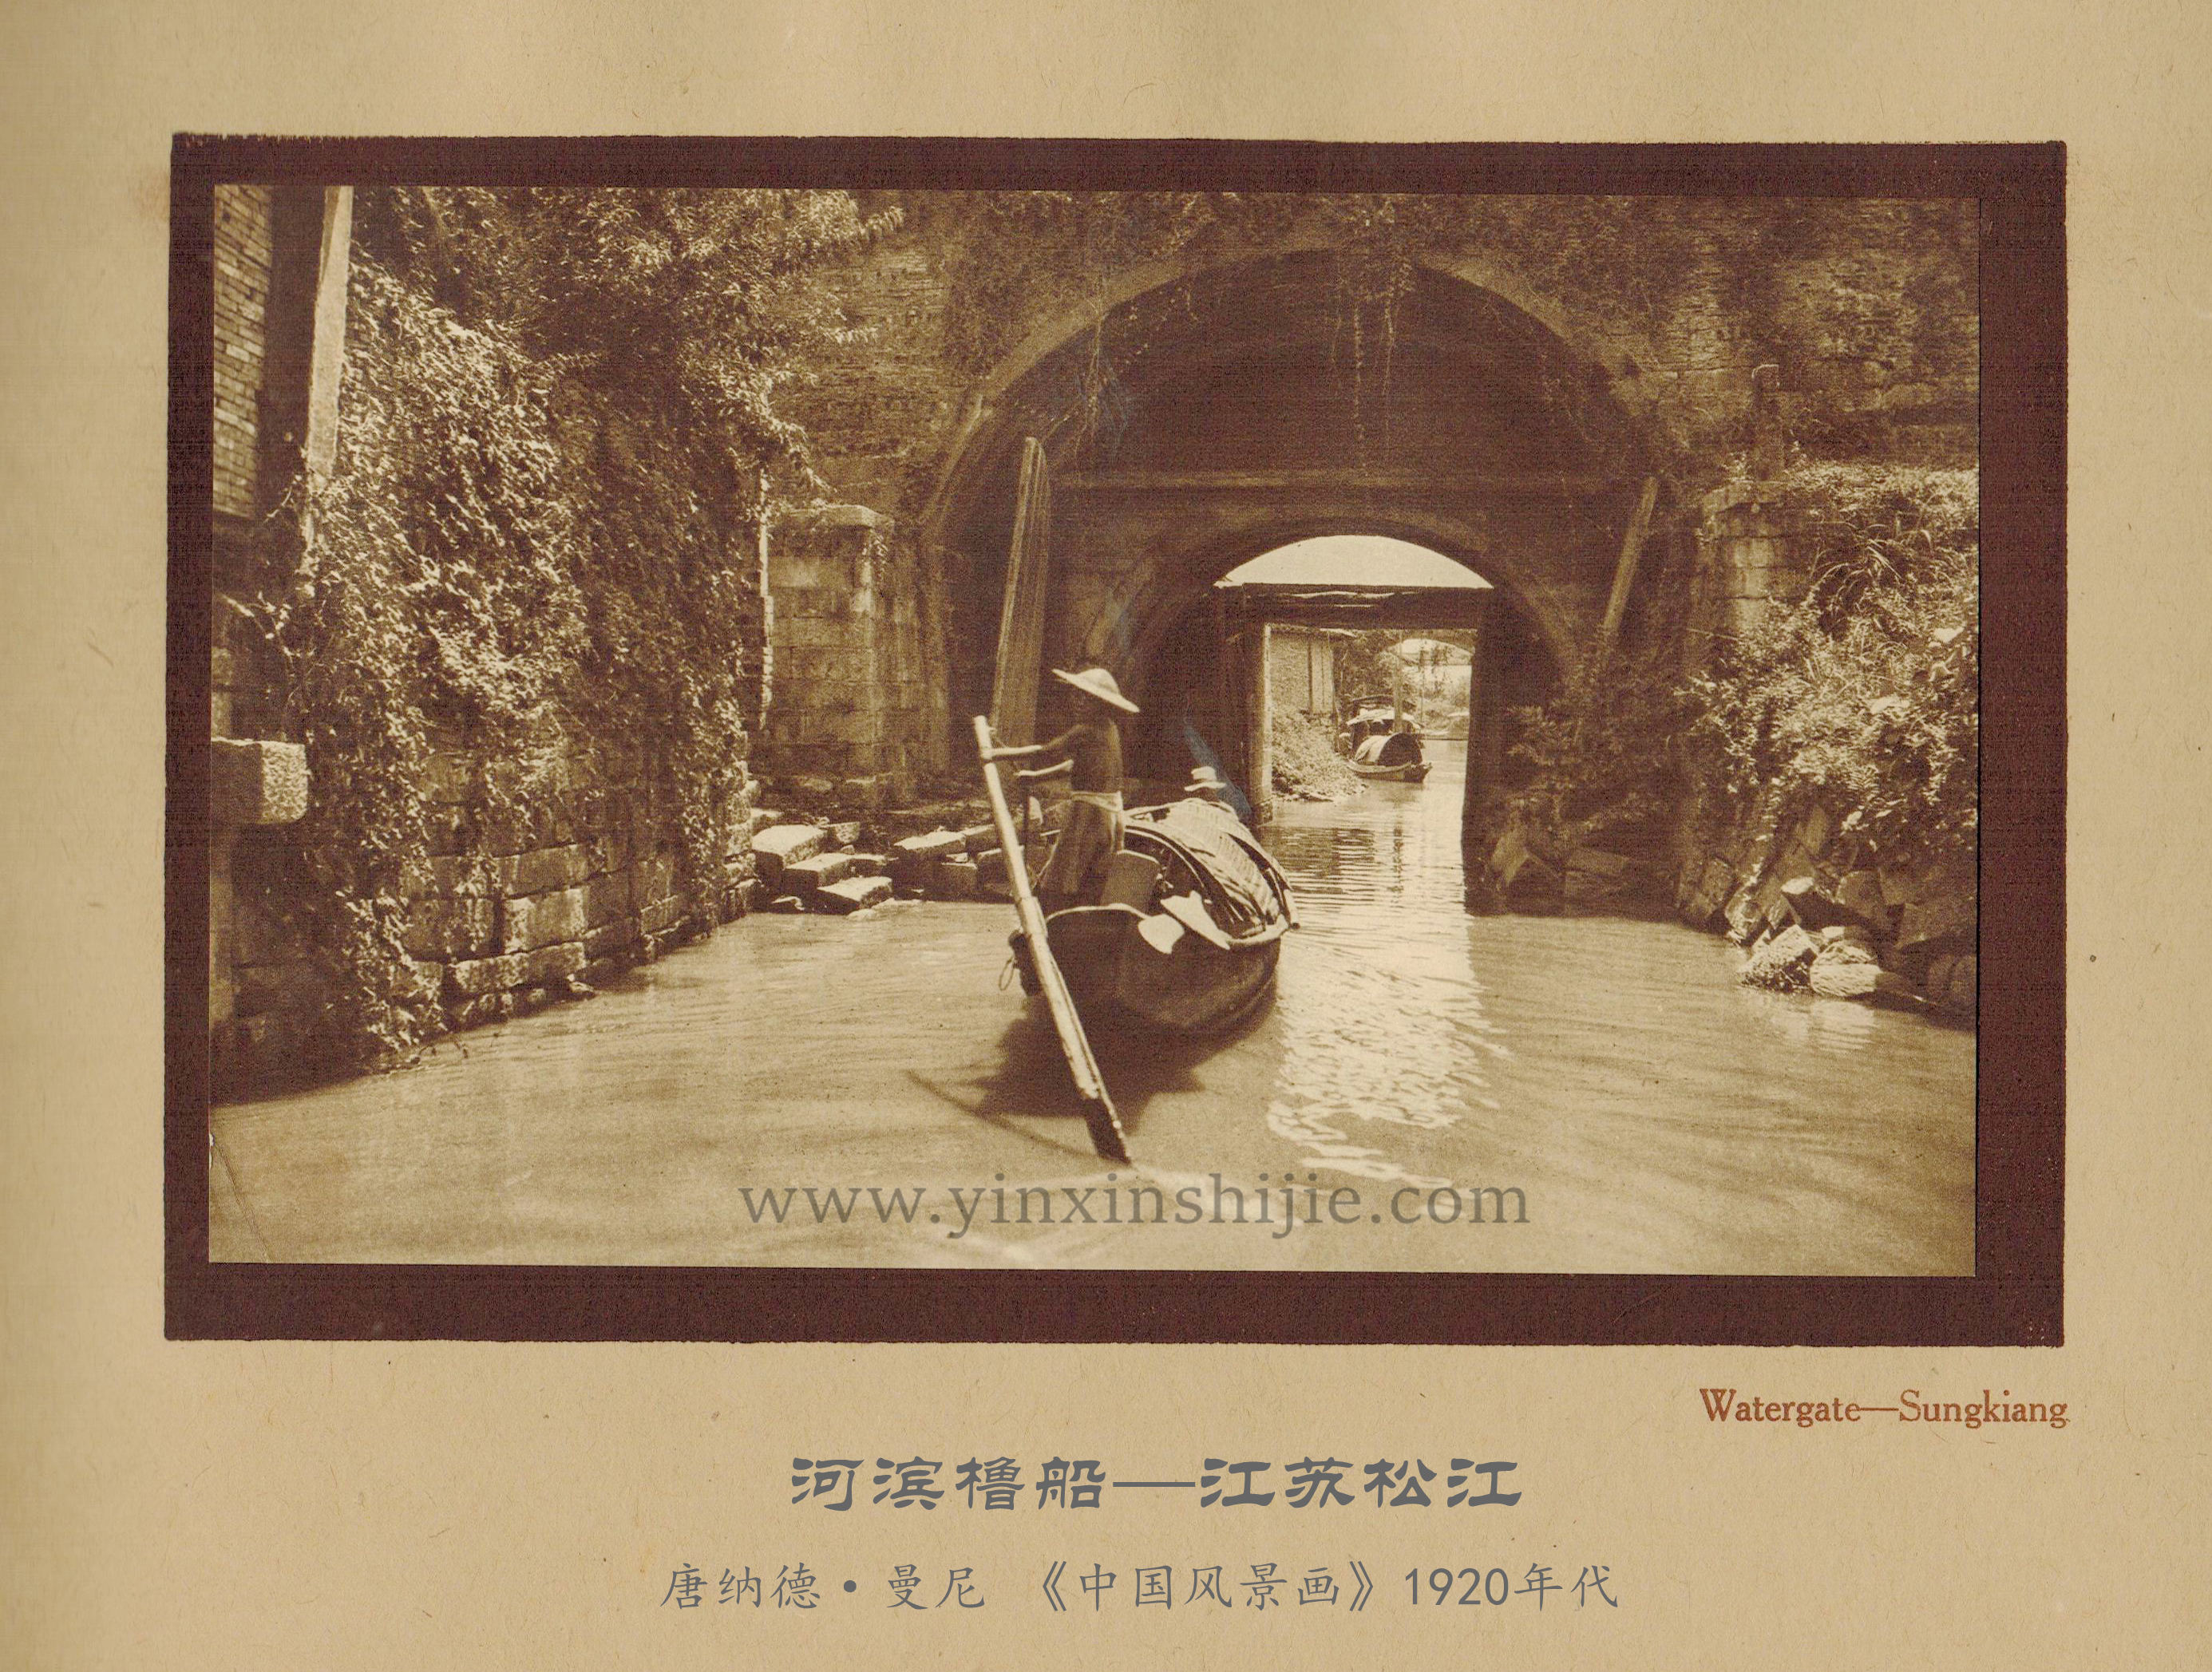 河滨撸船,江苏松江-唐纳德·曼尼《中国风景画》1920年代